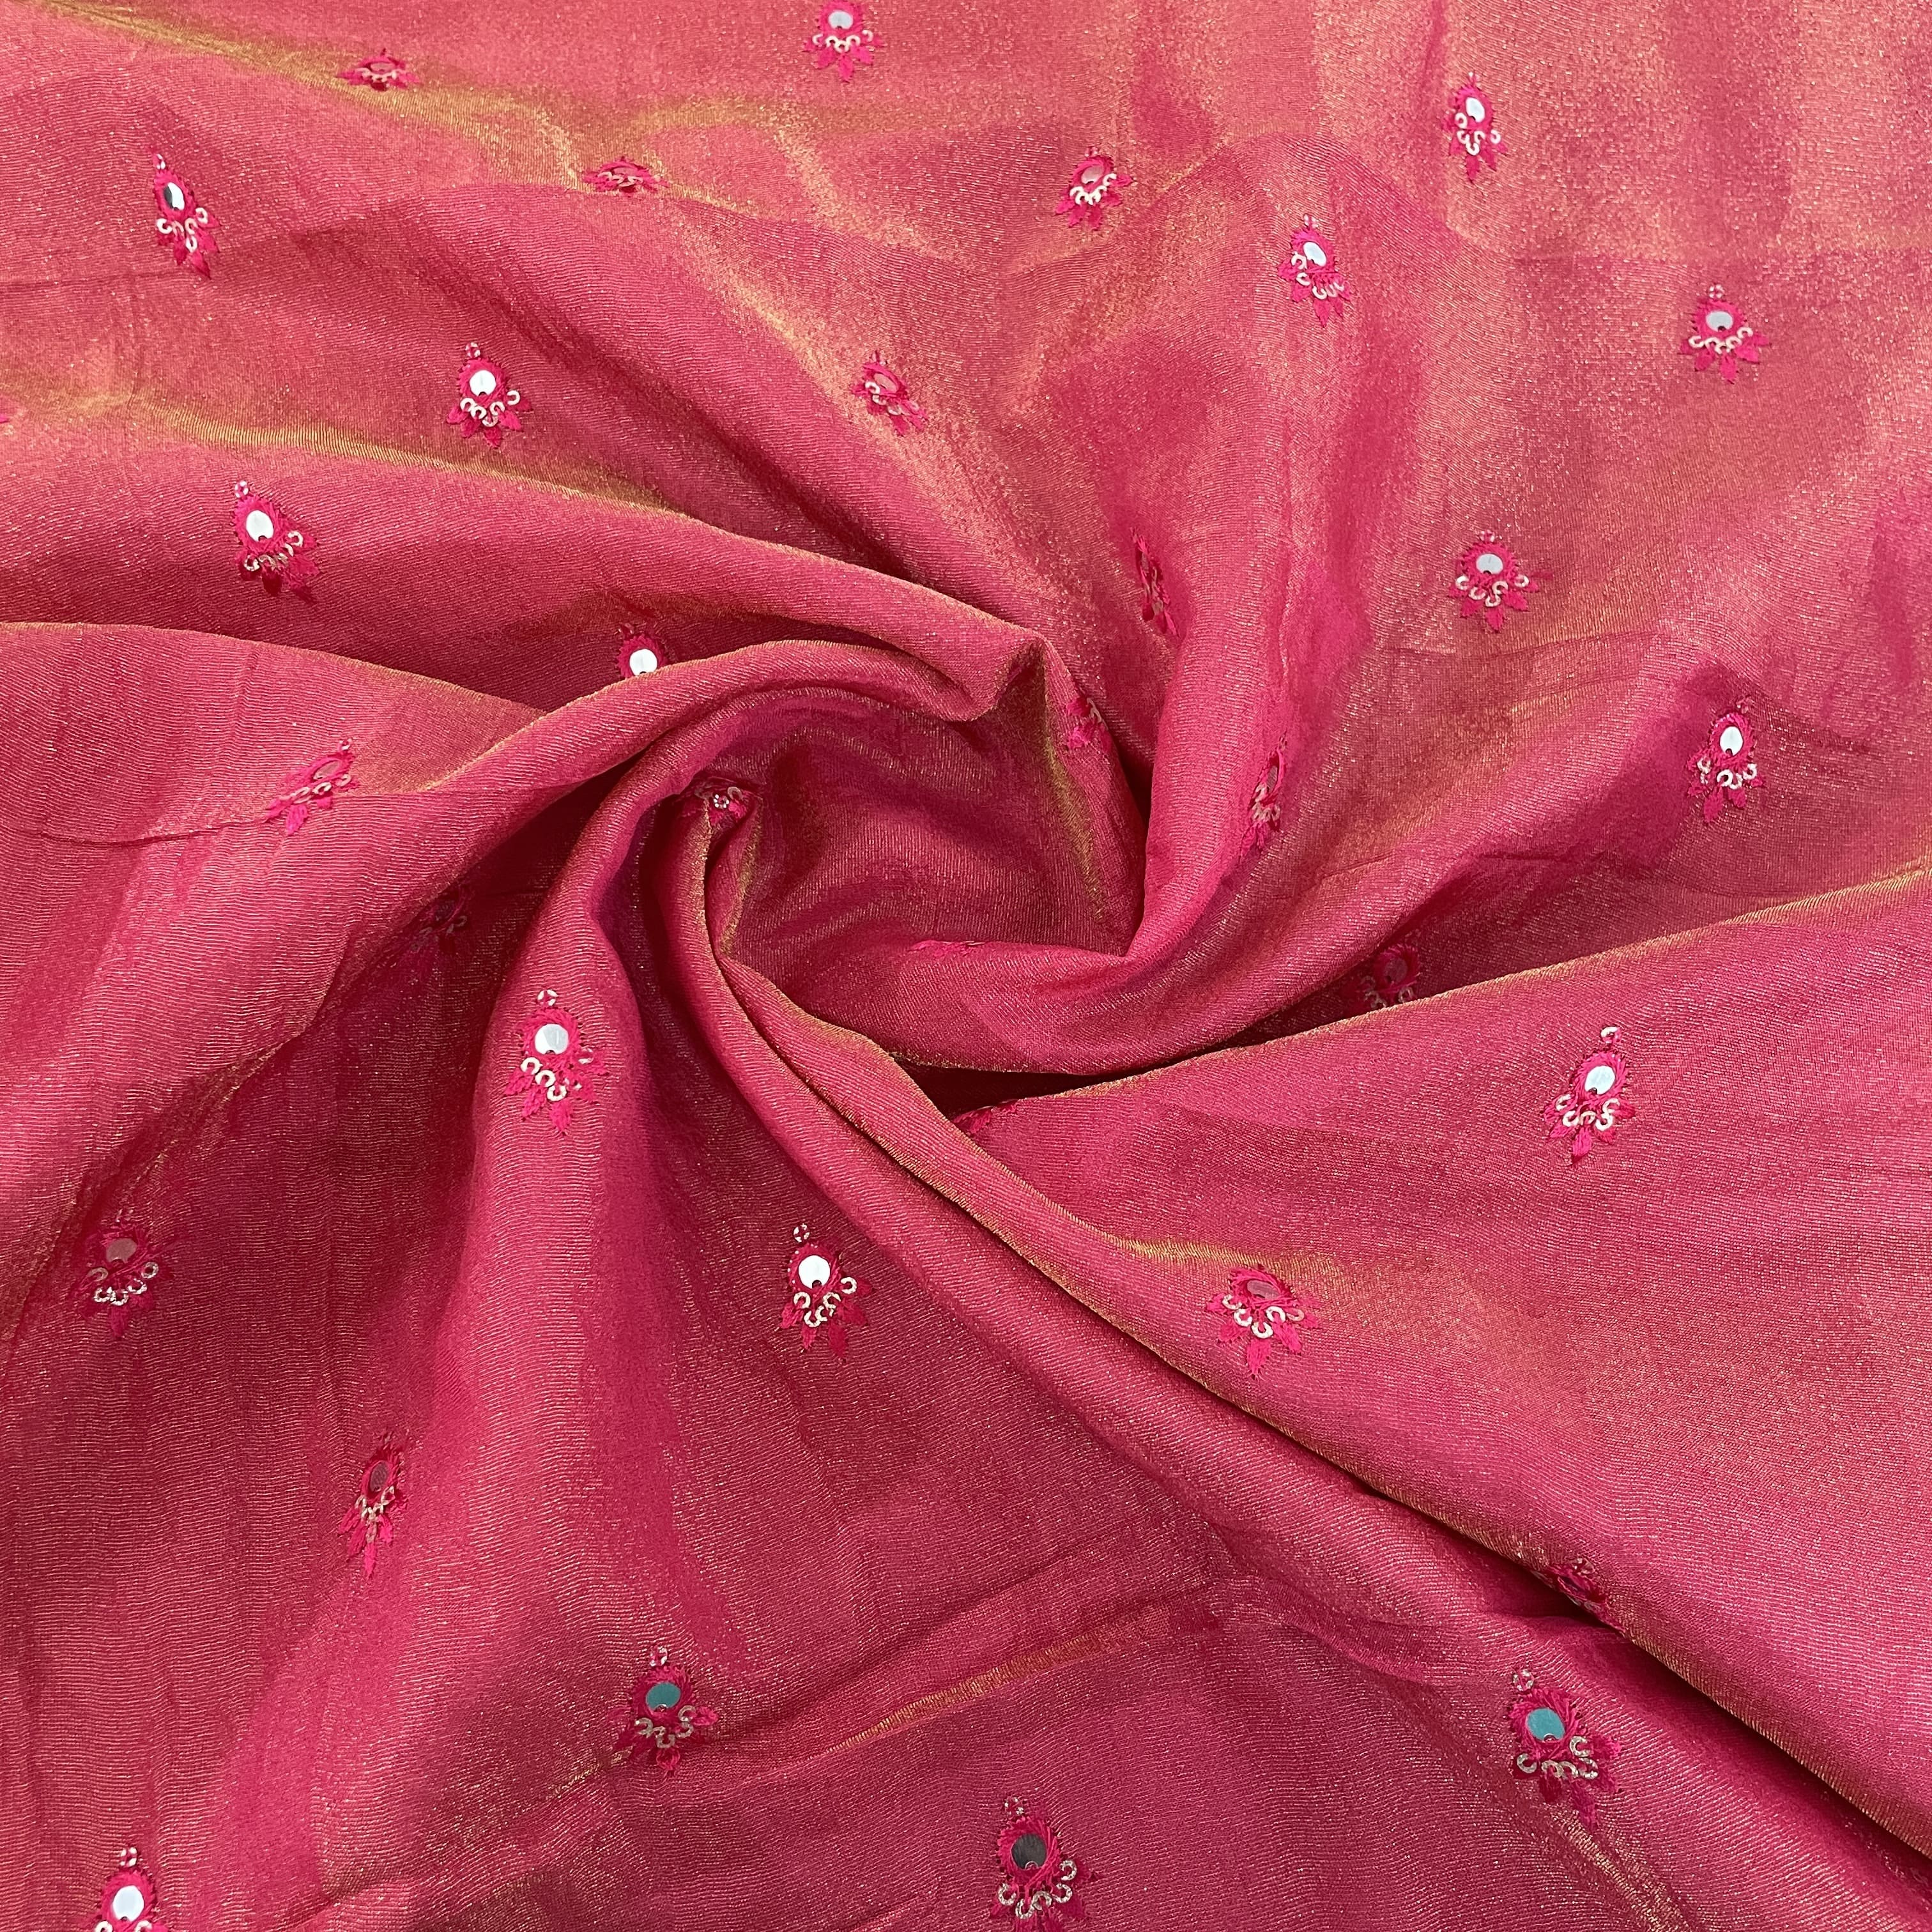 Silk Chiffon - Marshmallow Pink - Fabric by the Yard